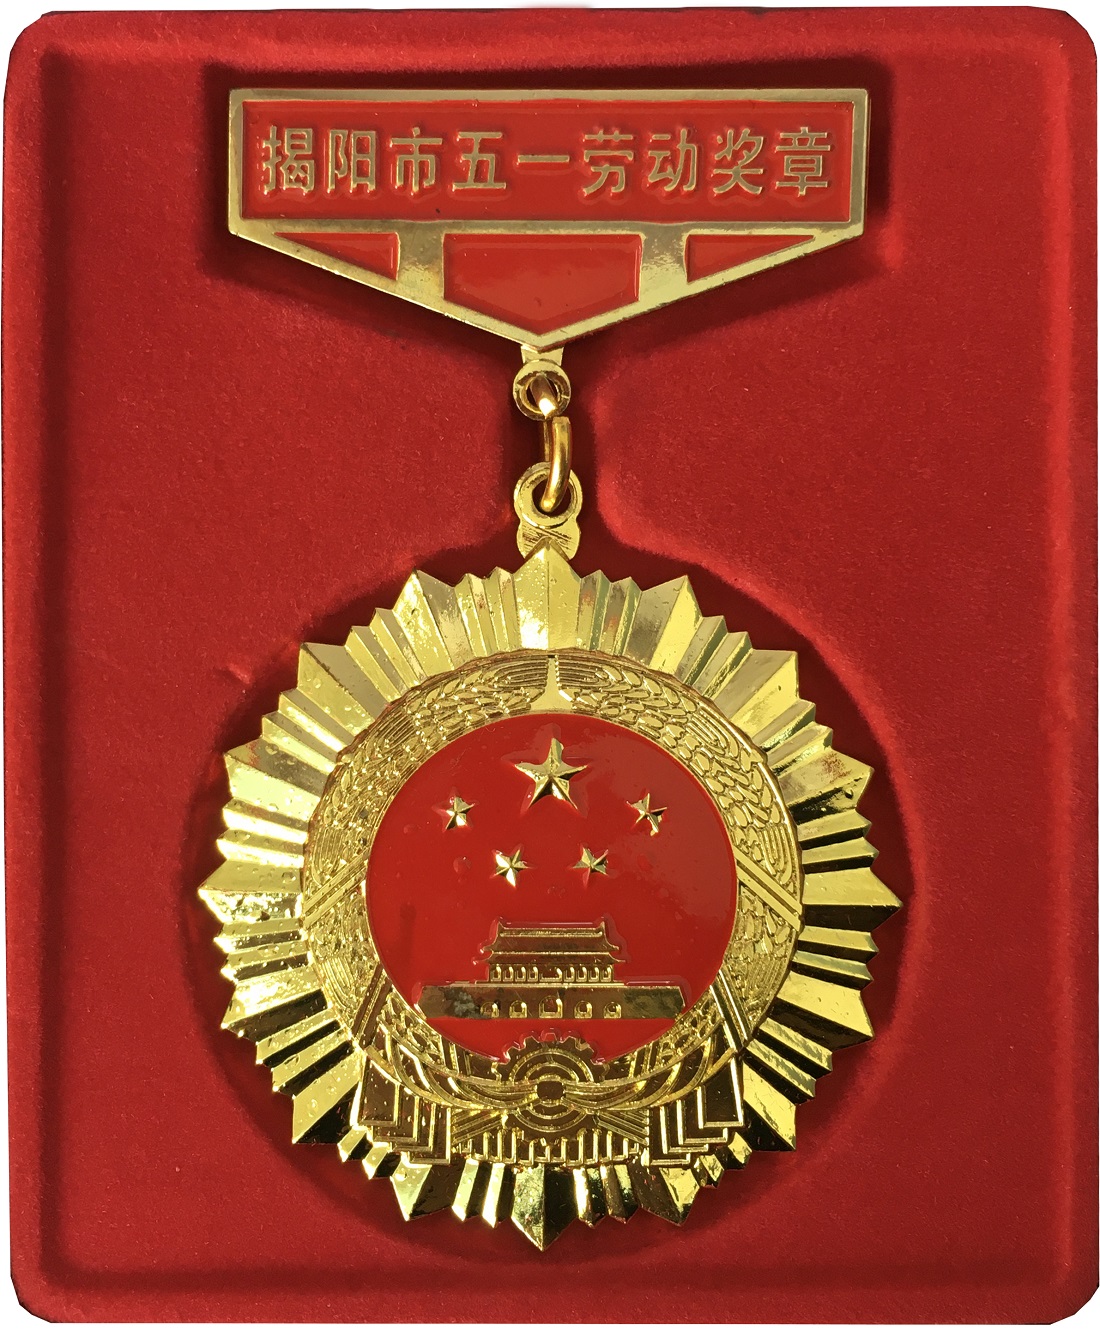 我司卢海裕、余培敏、李佳扬三人 获授“揭阳市五一劳动奖章”